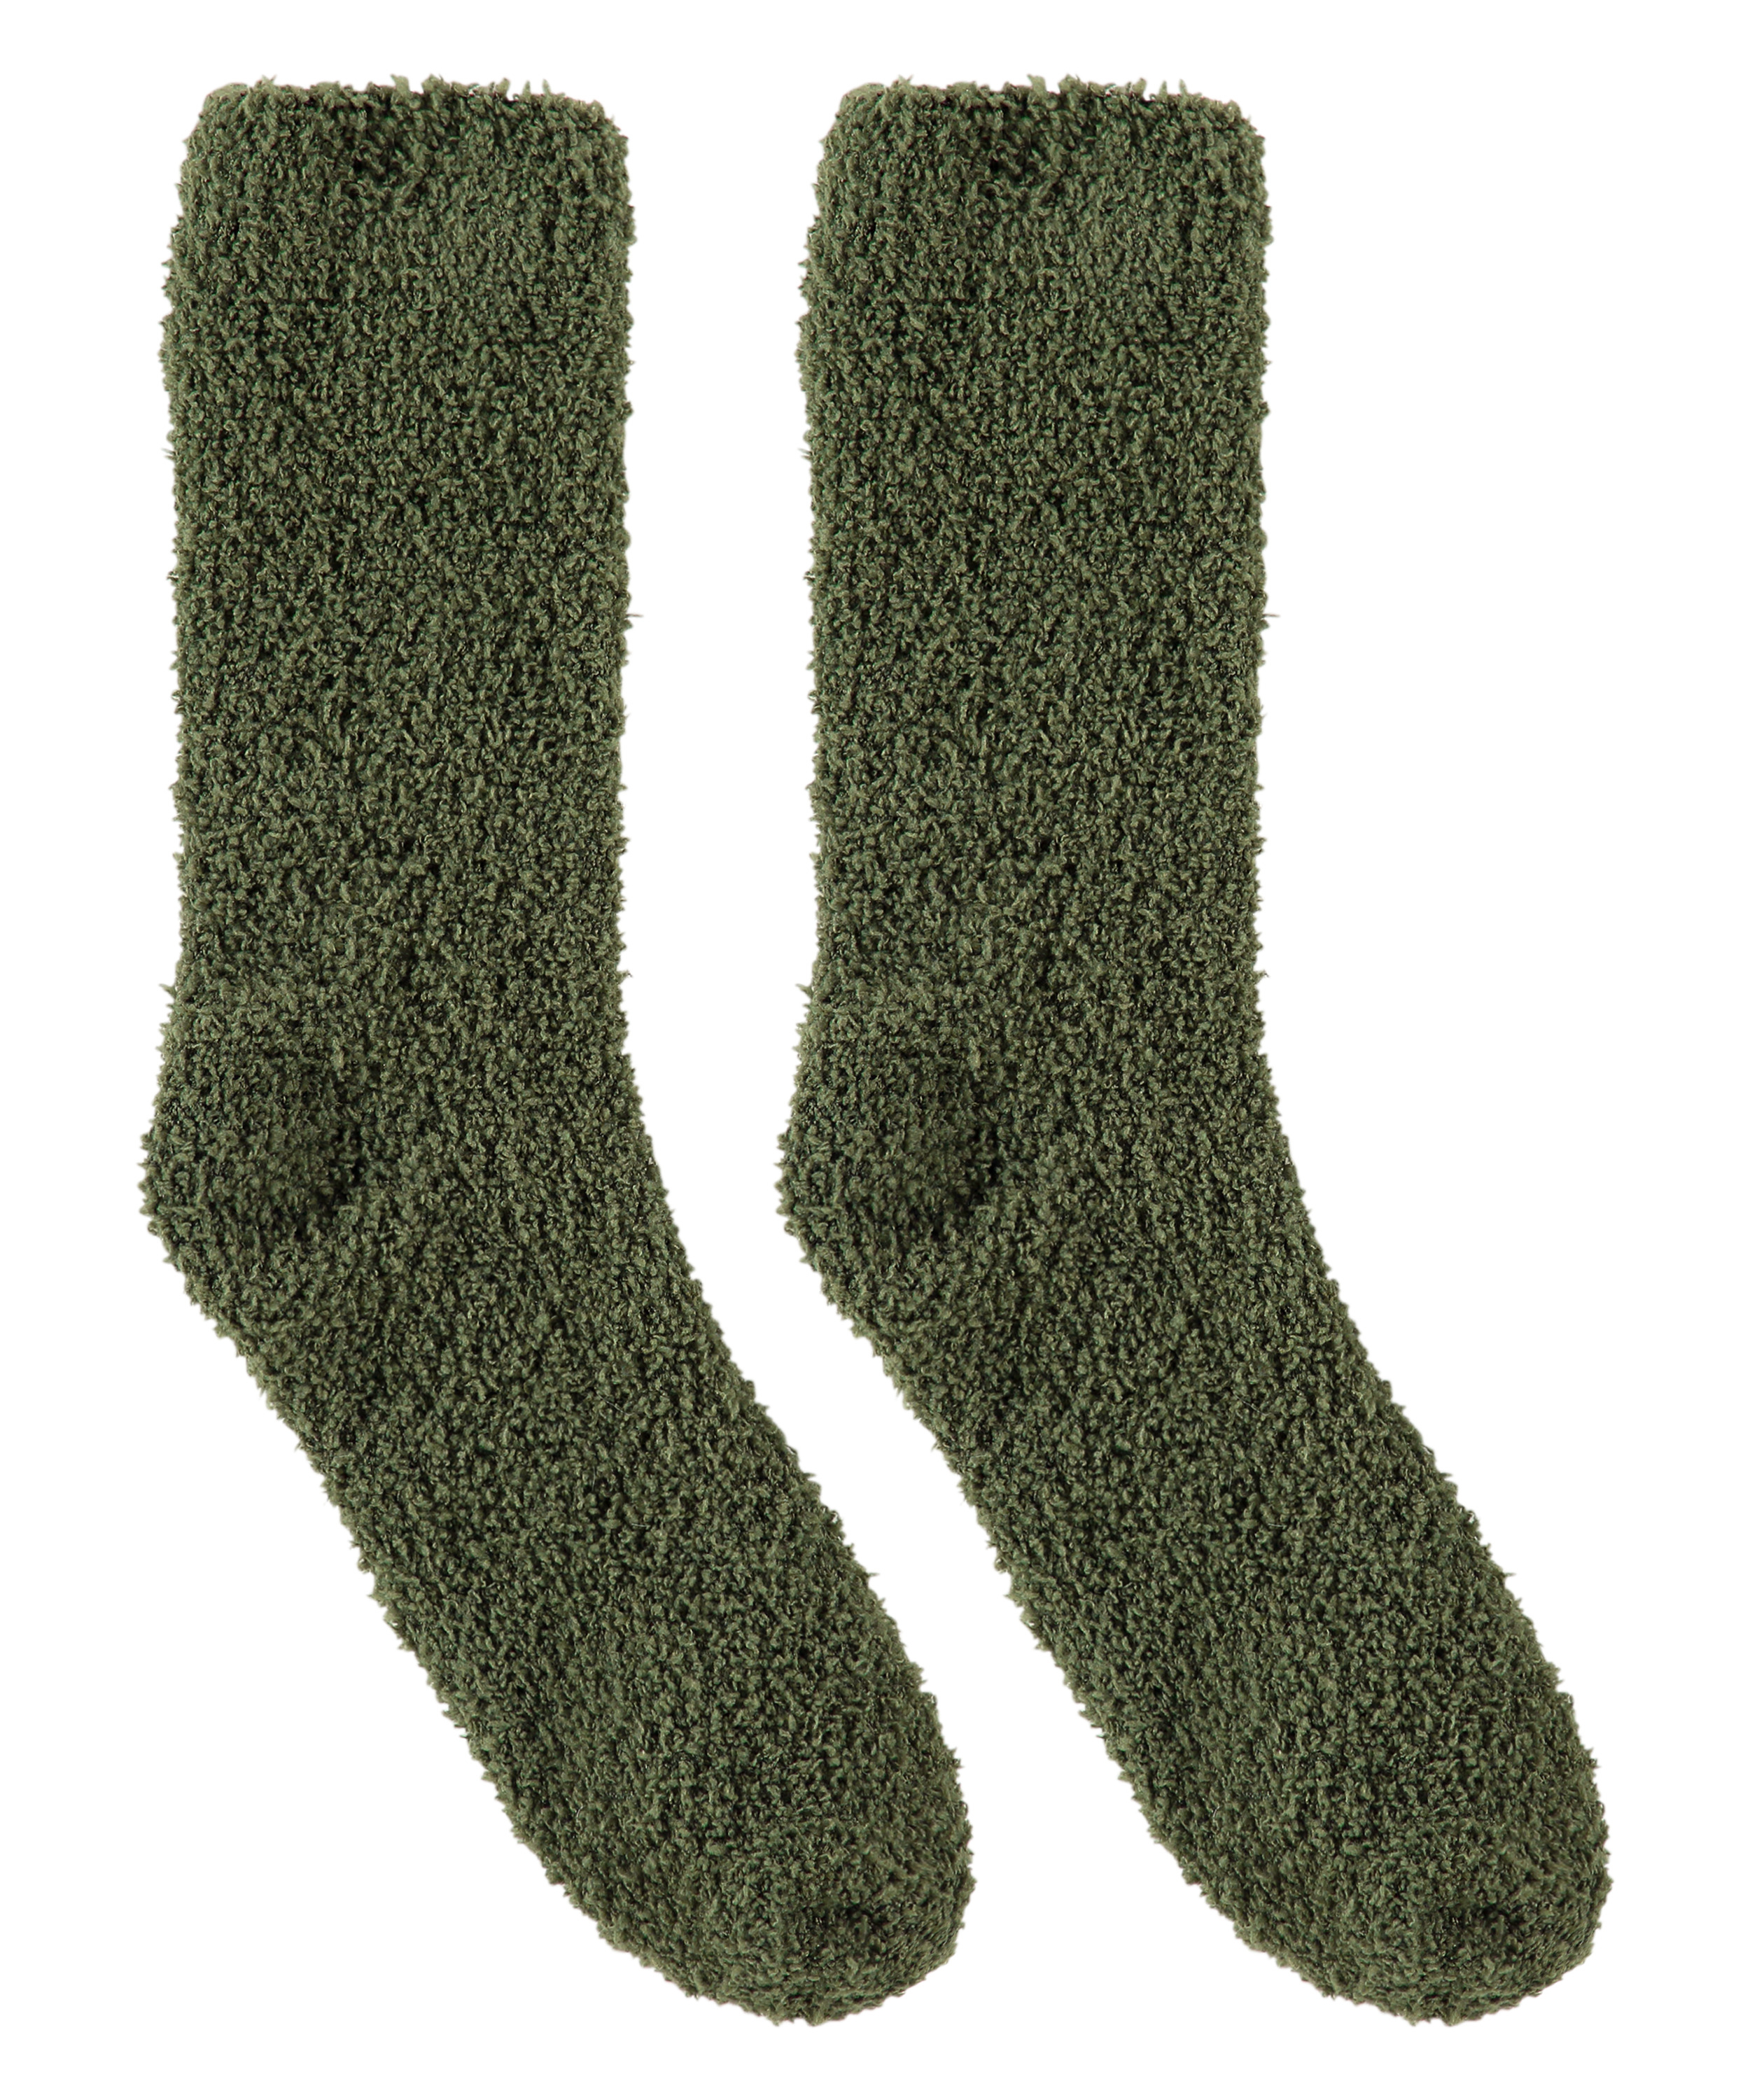 Socken flauschig, grün, main